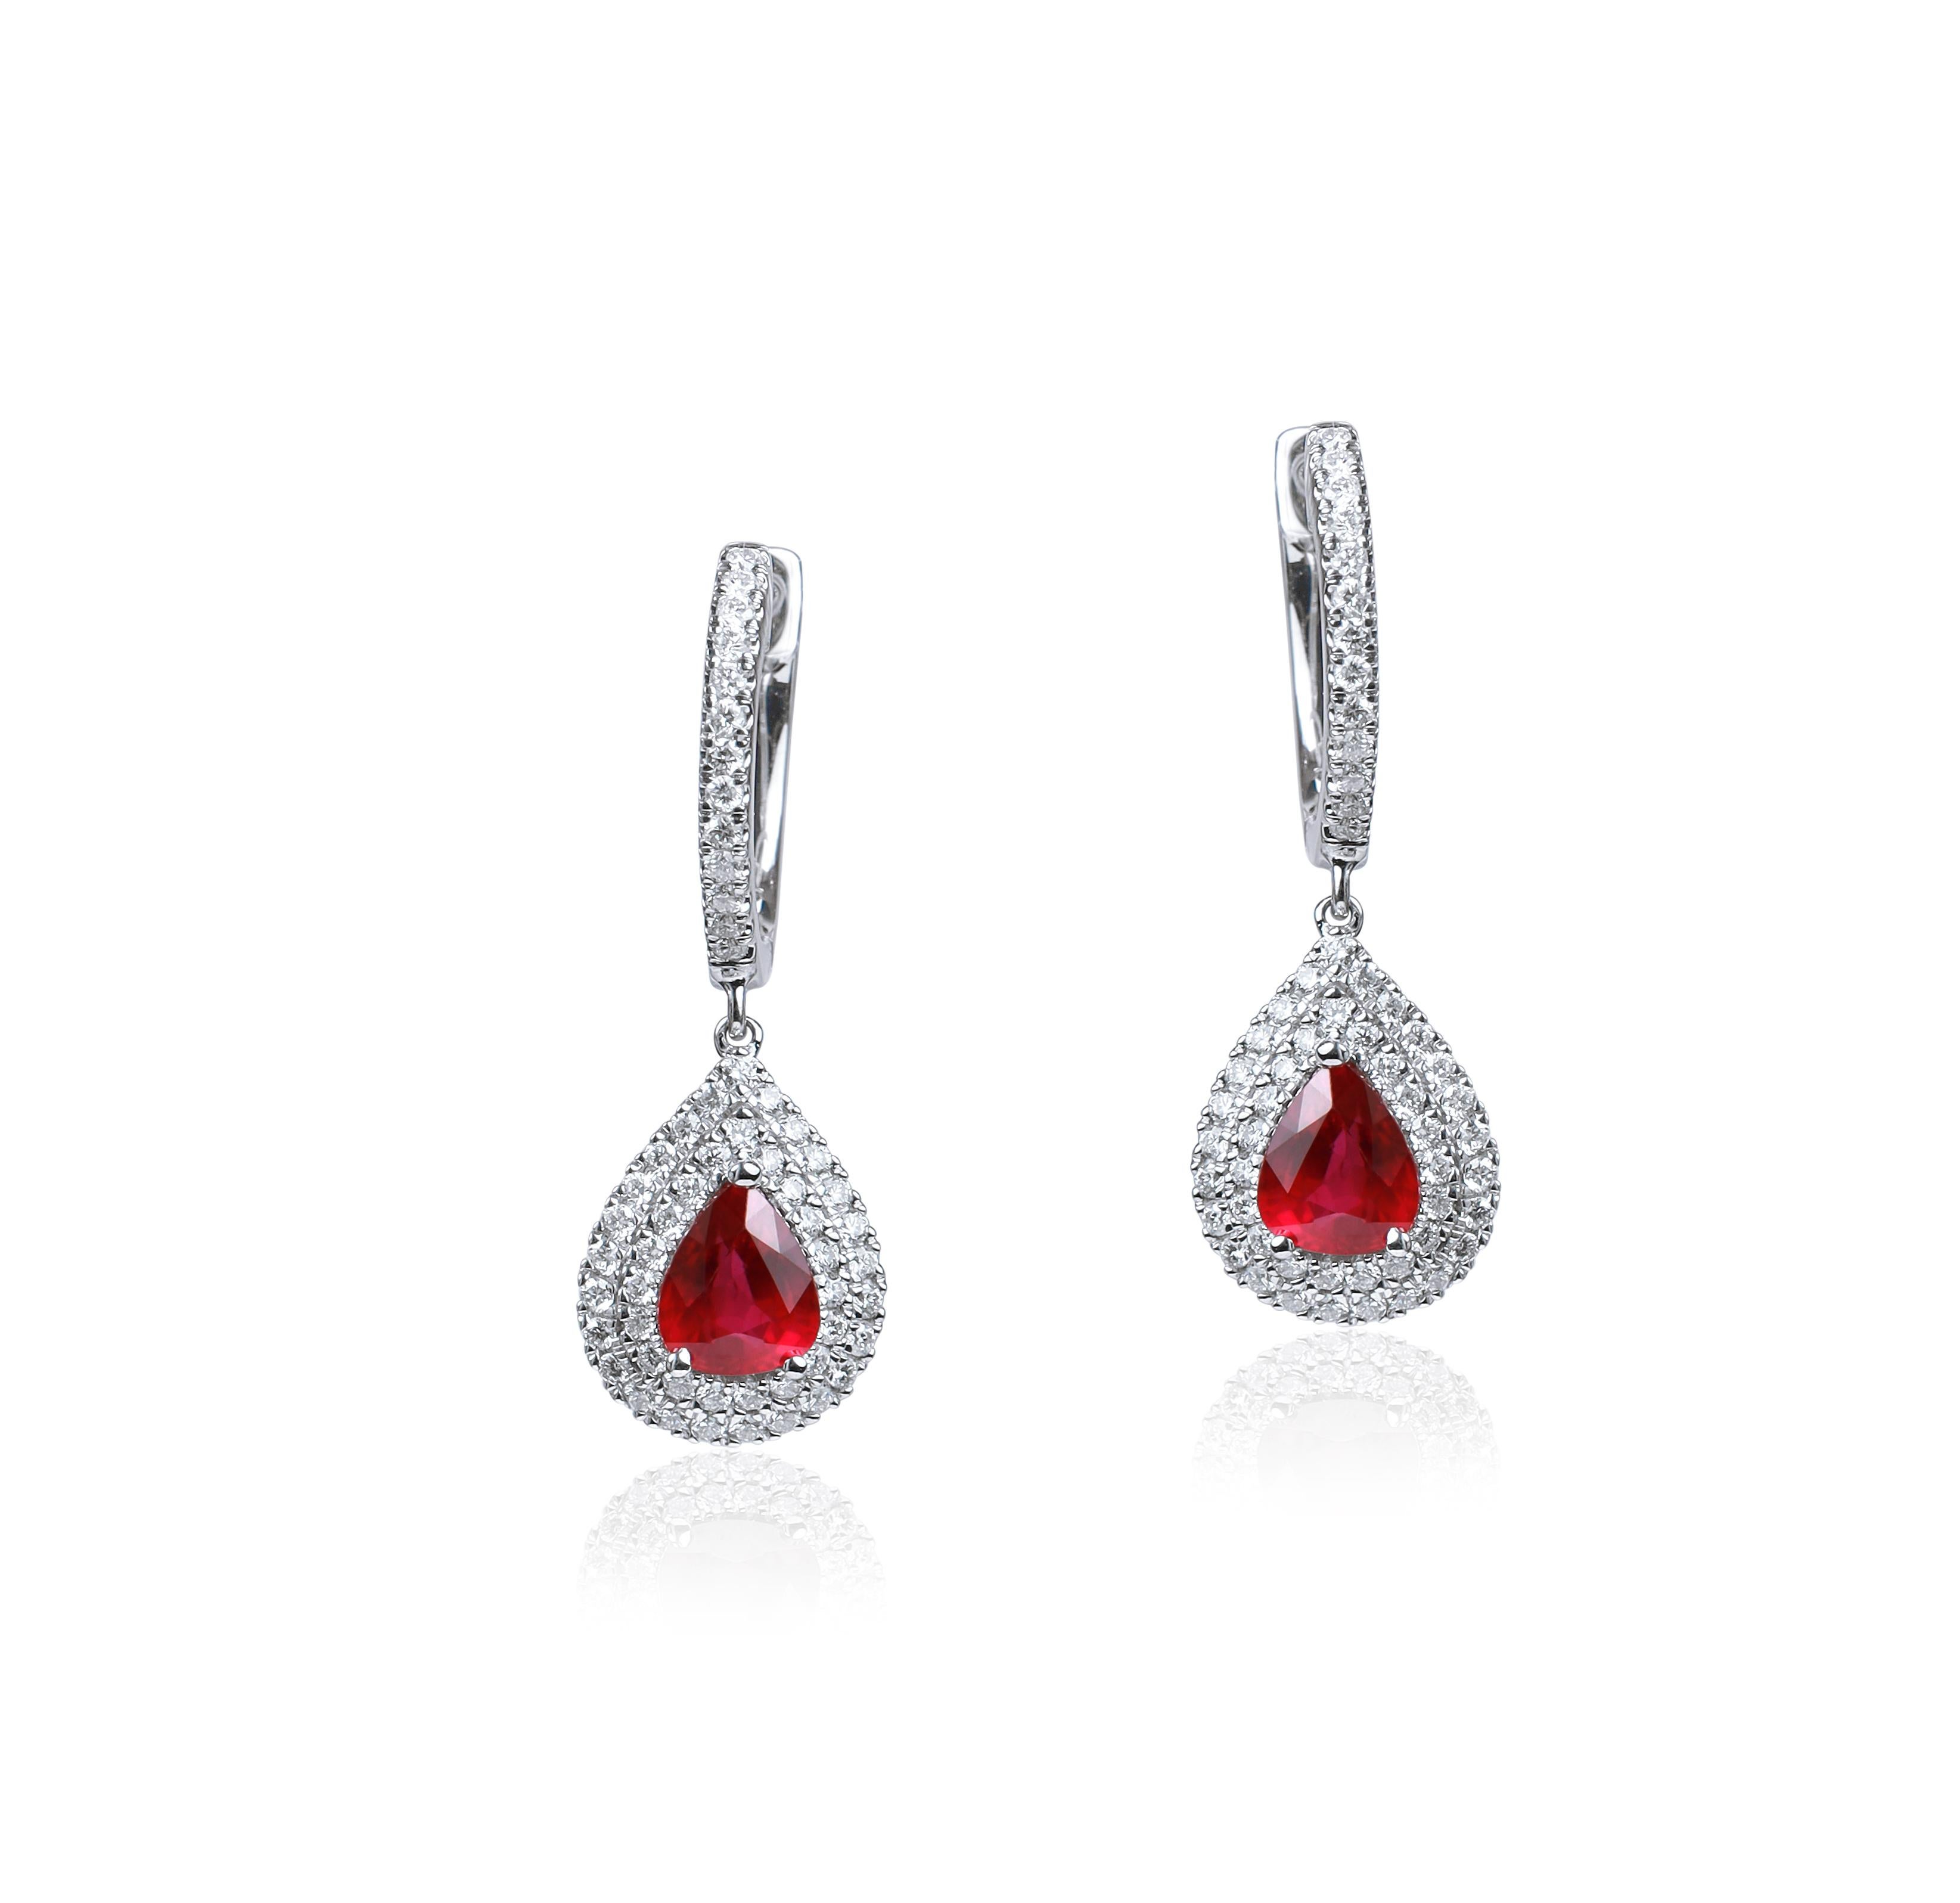 Außergewöhnlicher ovaler natürlicher Rubin-Diamant-Ohrringe, Halo-Diamant in 18 Karat Gold


Erhältlich in 18 Karat Weißgold.

Das gleiche Design kann auch mit anderen Edelsteinen auf Anfrage hergestellt werden.

Einzelheiten zum Produkt:

-